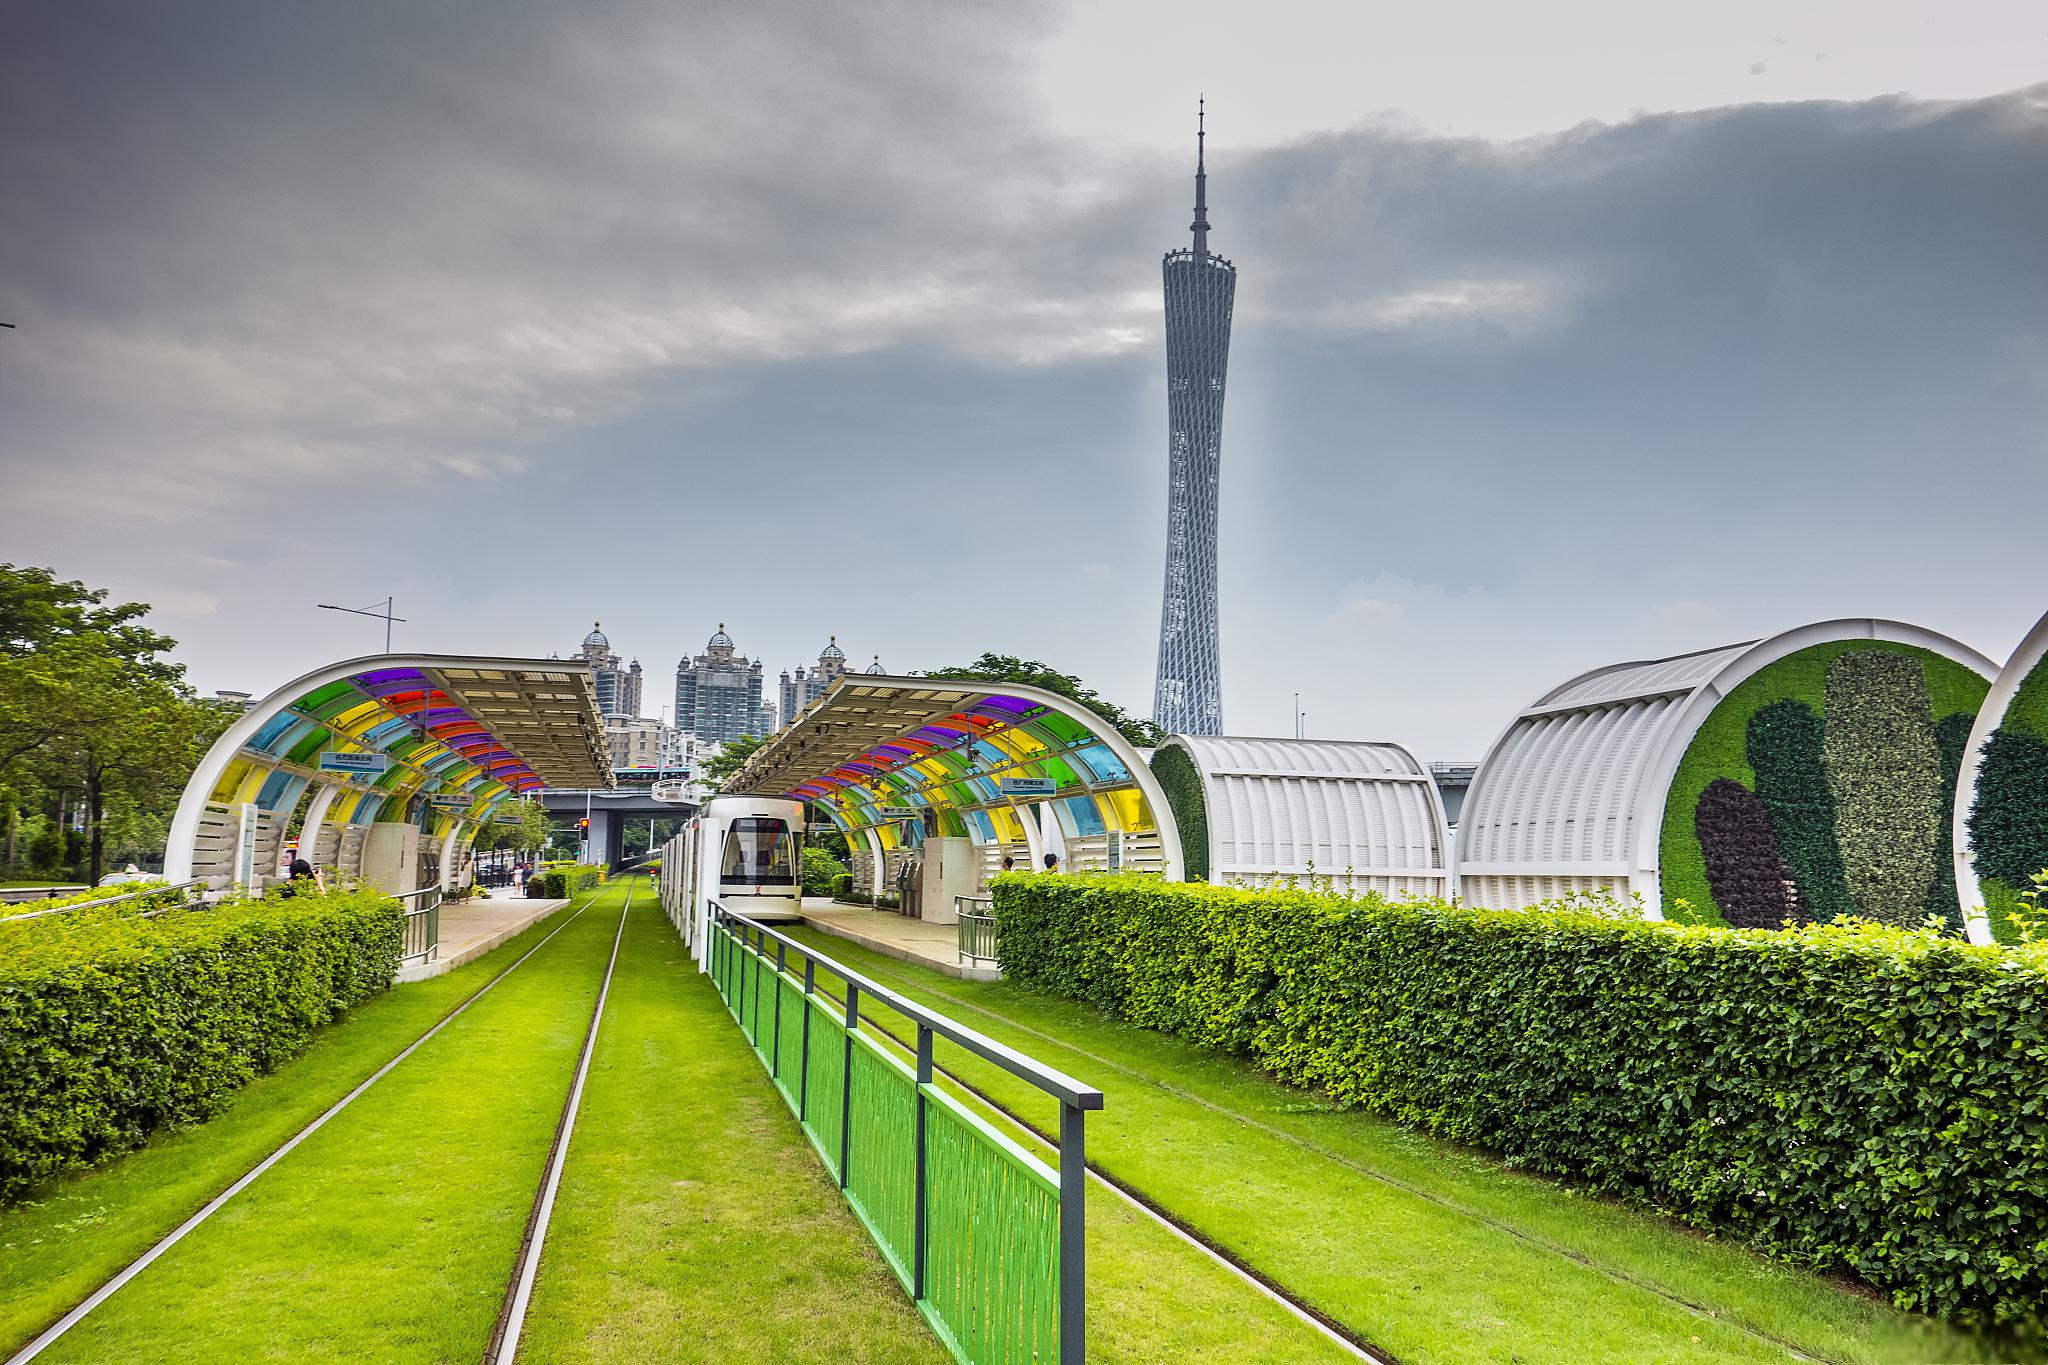 天河区旅游景点推荐 作为广州市的商业中心,天河区有着许多令人兴奋的